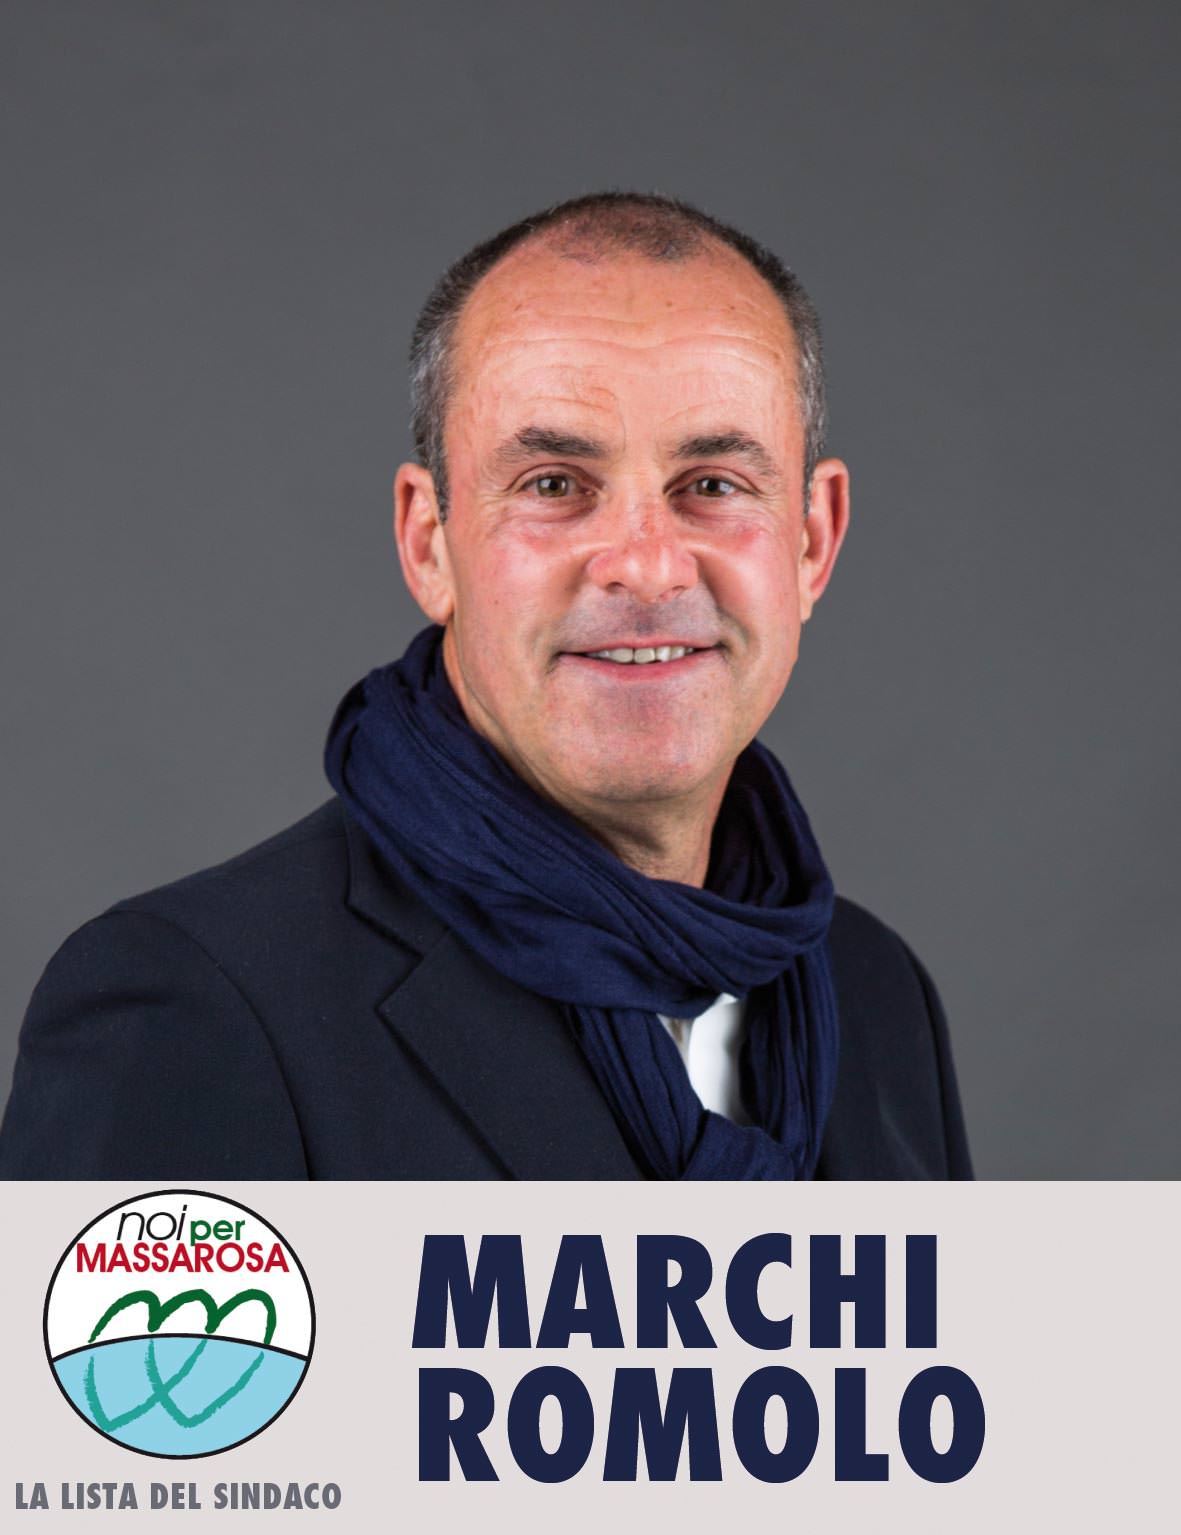 Volantini diffamatori, Romolo Marchi: “I coordinatori delle forze politica prendano le distanze”